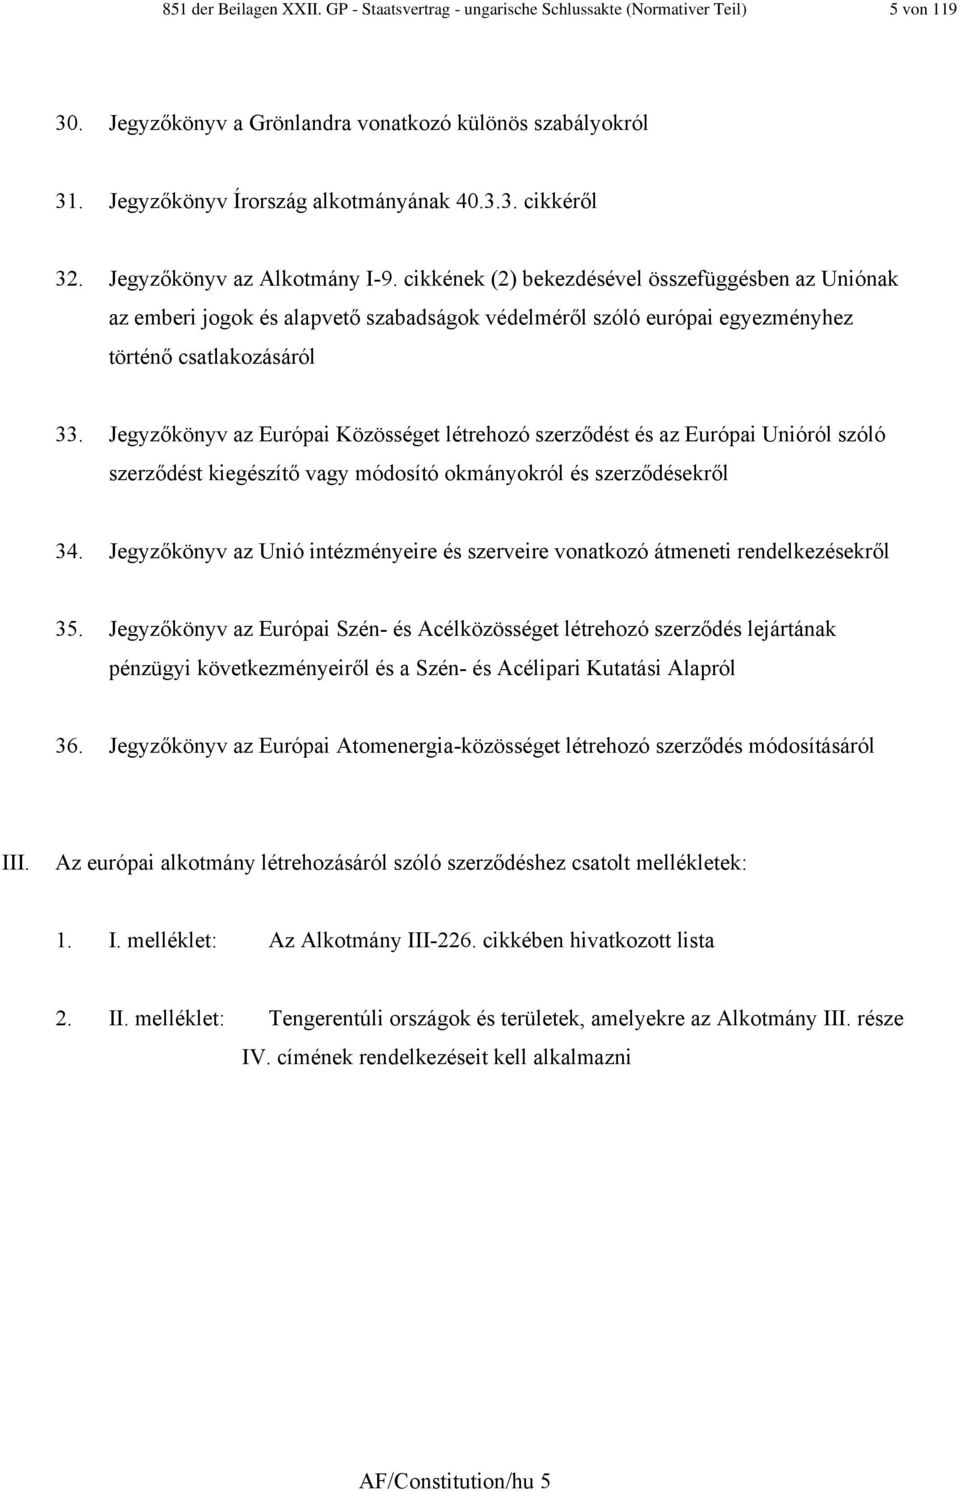 Jegyzőkönyv az Európai Közösséget létrehozó szerződést és az Európai Unióról szóló szerződést kiegészítő vagy módosító okmányokról és szerződésekről 34.